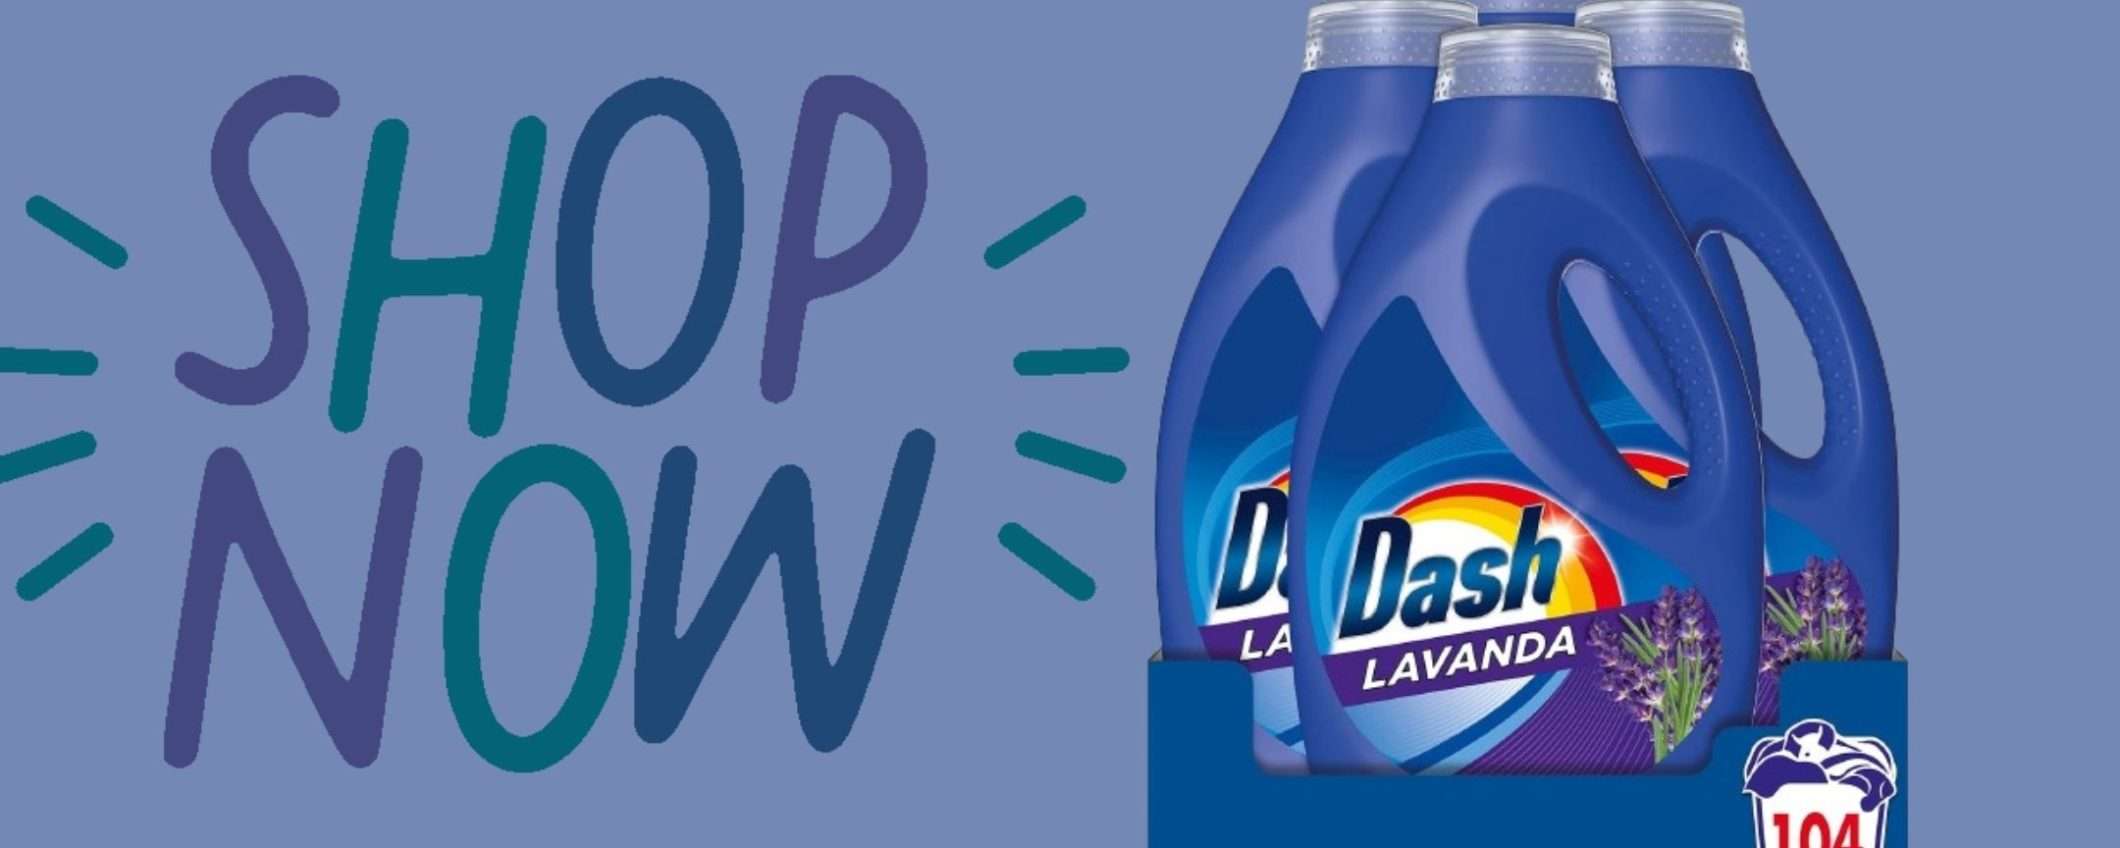 Dash Lavatrice alla Lavanda: 104 lavaggi a soli 25€ grazie all'offerta incredibile di Amazon